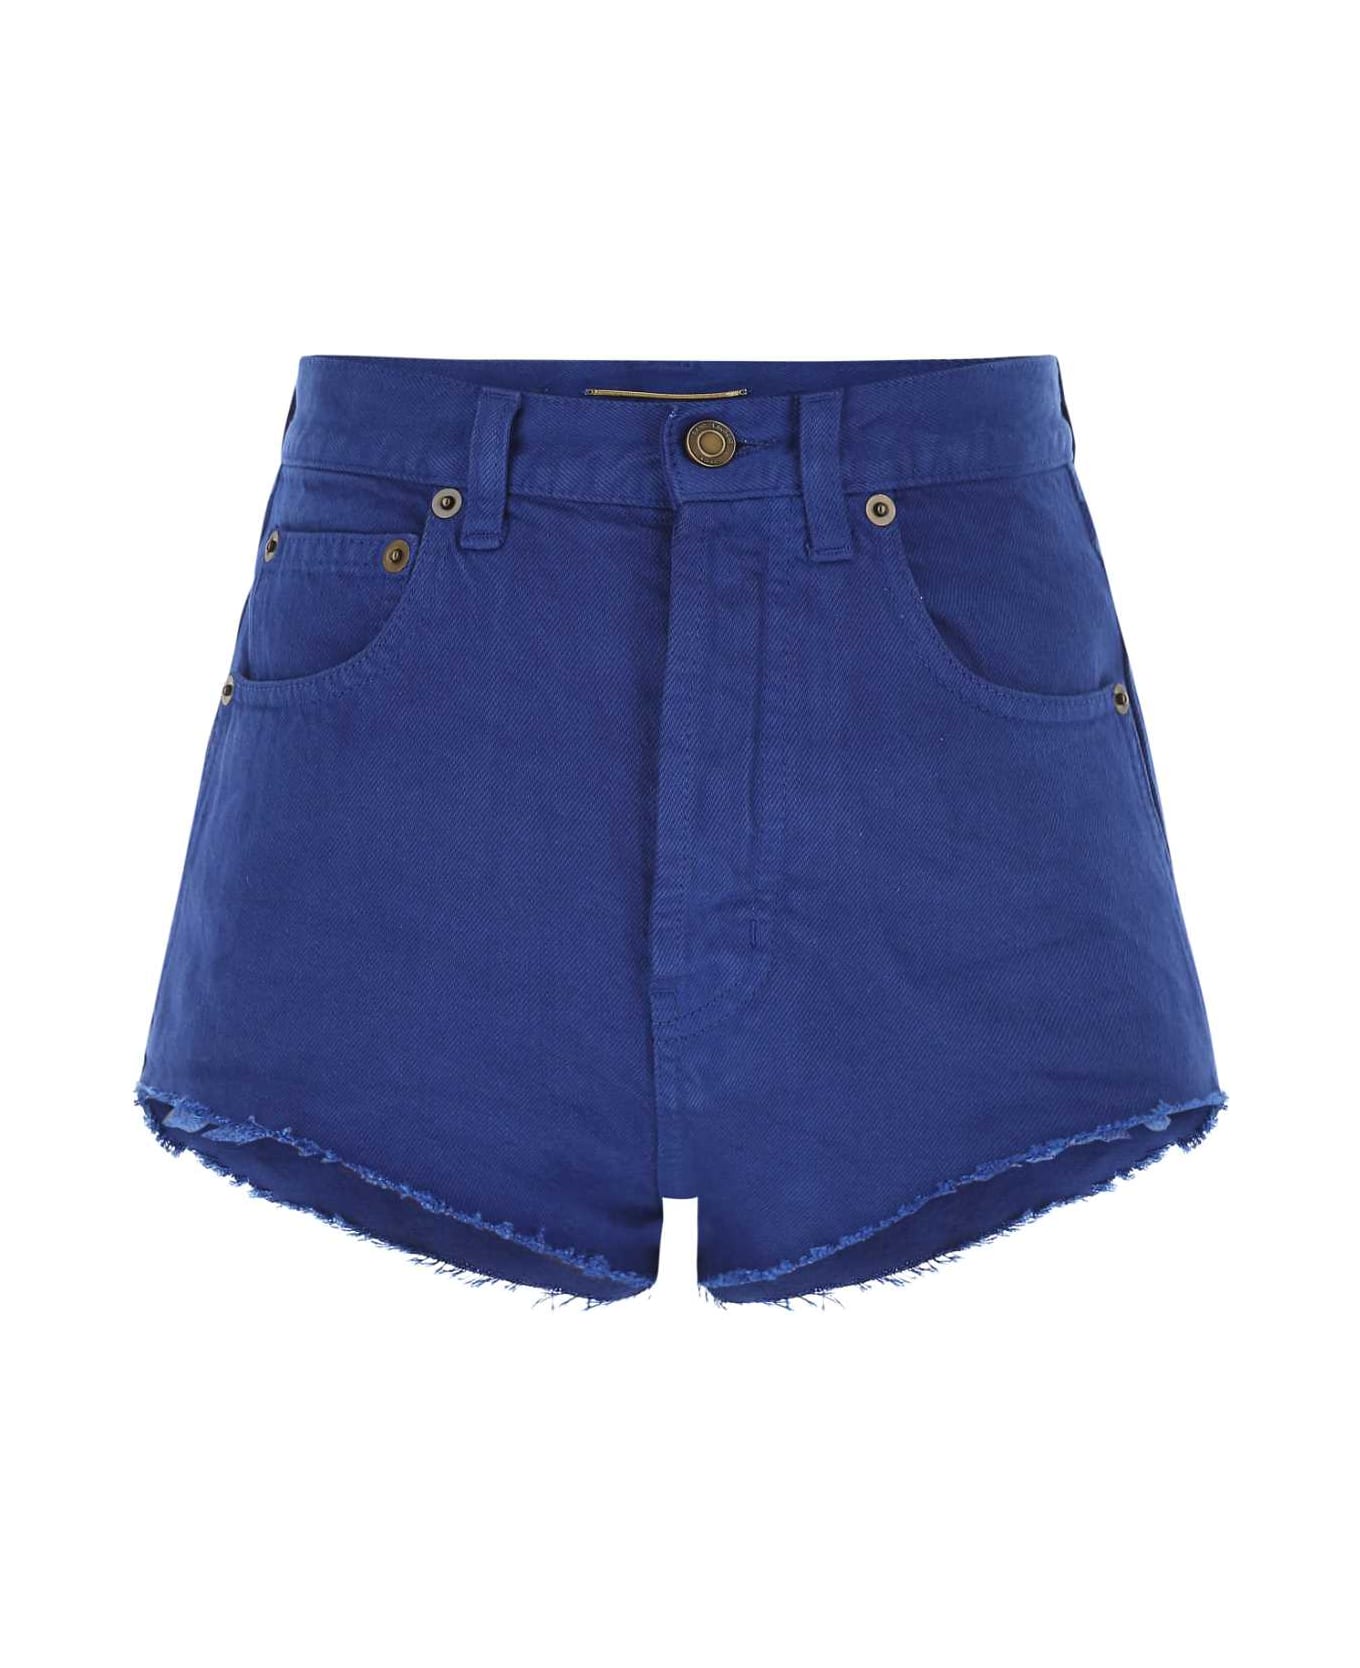 Saint Laurent Electric Blue Denim Shorts - 4949